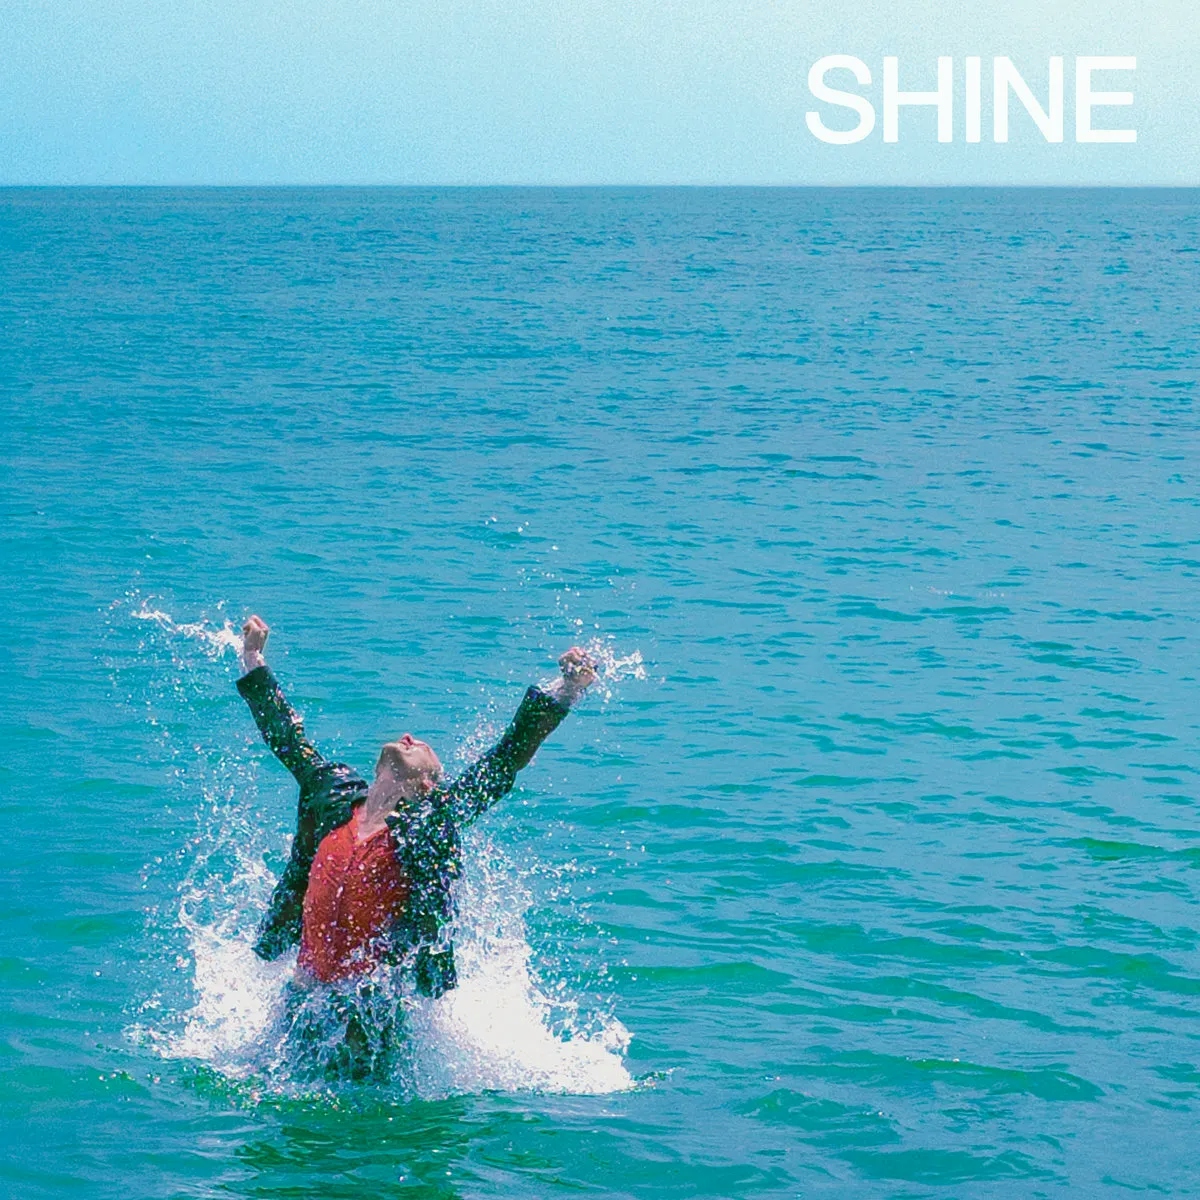 Album artwork for Shine by Sean Nicholas Savage